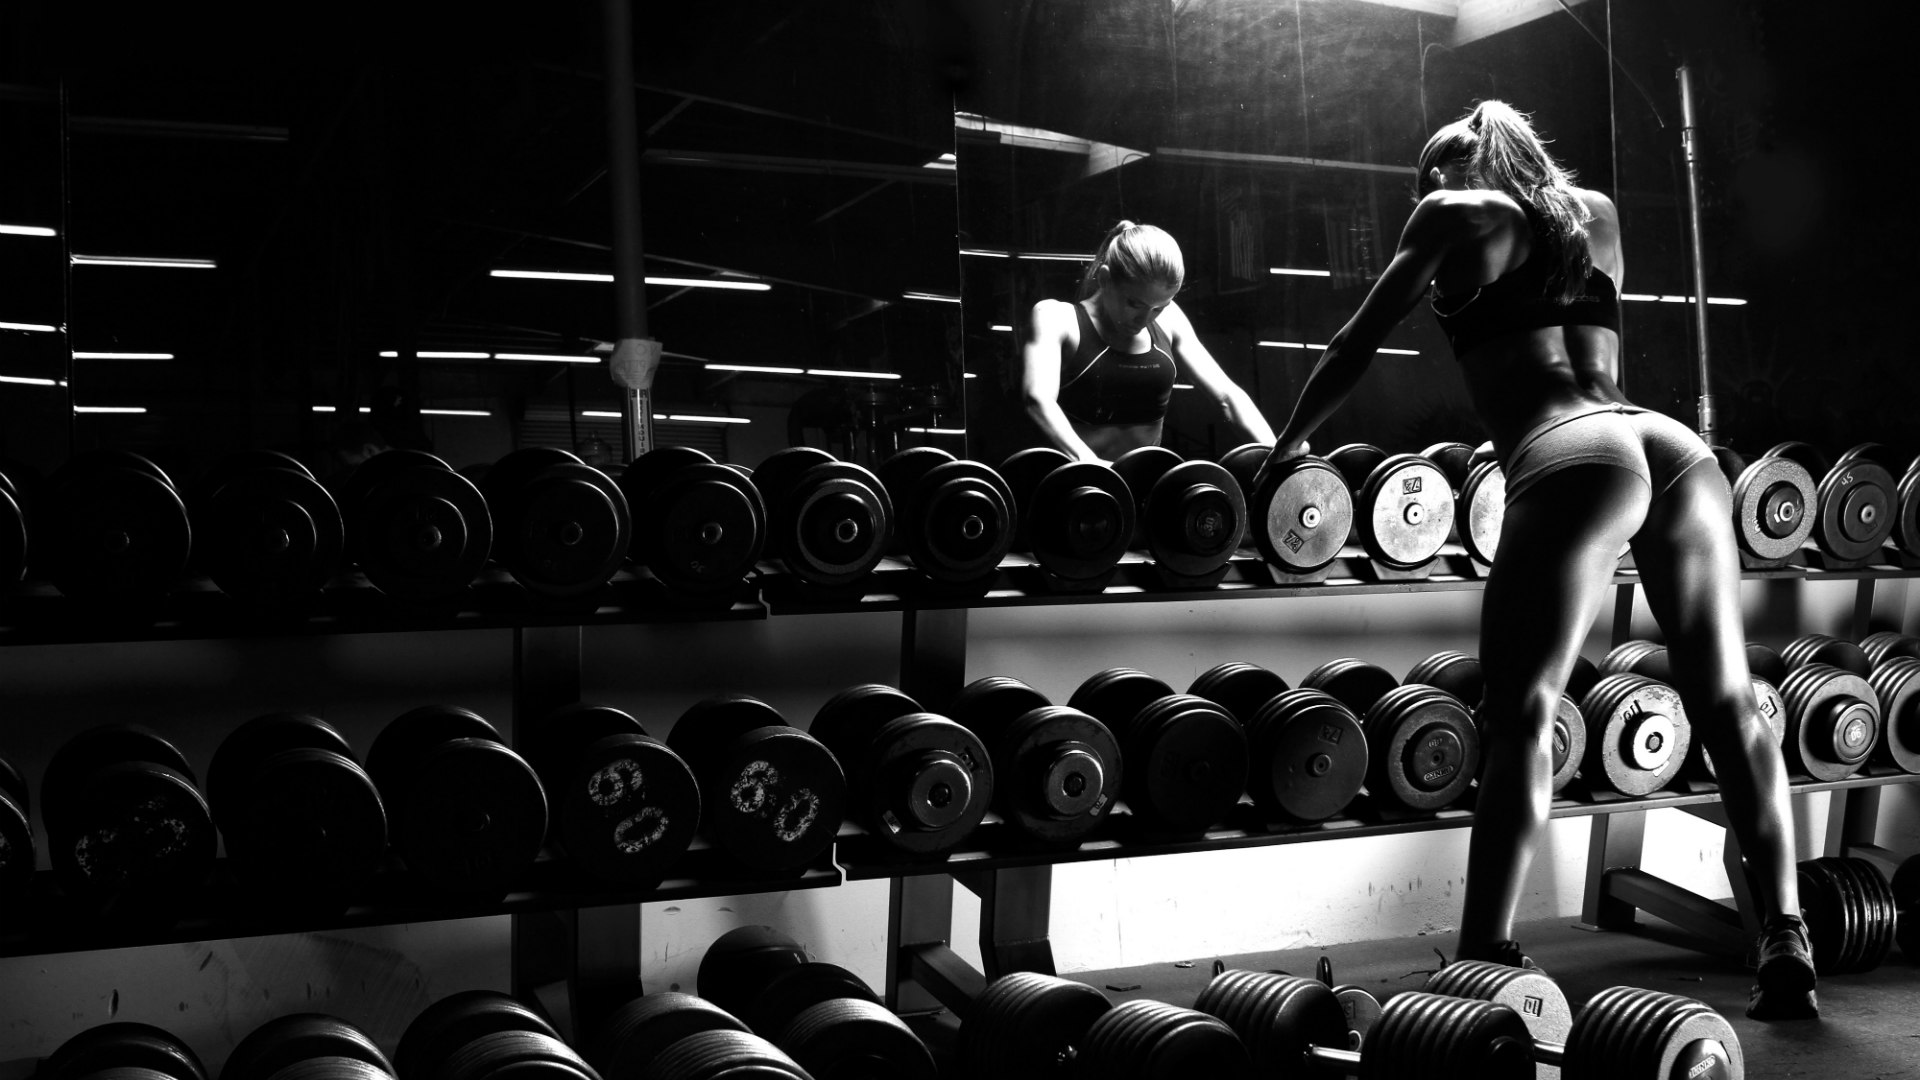 Avikalp MWZ3613 Fit Man Weight Lifting Boxing Gym Equipments HD Wallpa   Avikalp International  3D Wallpapers